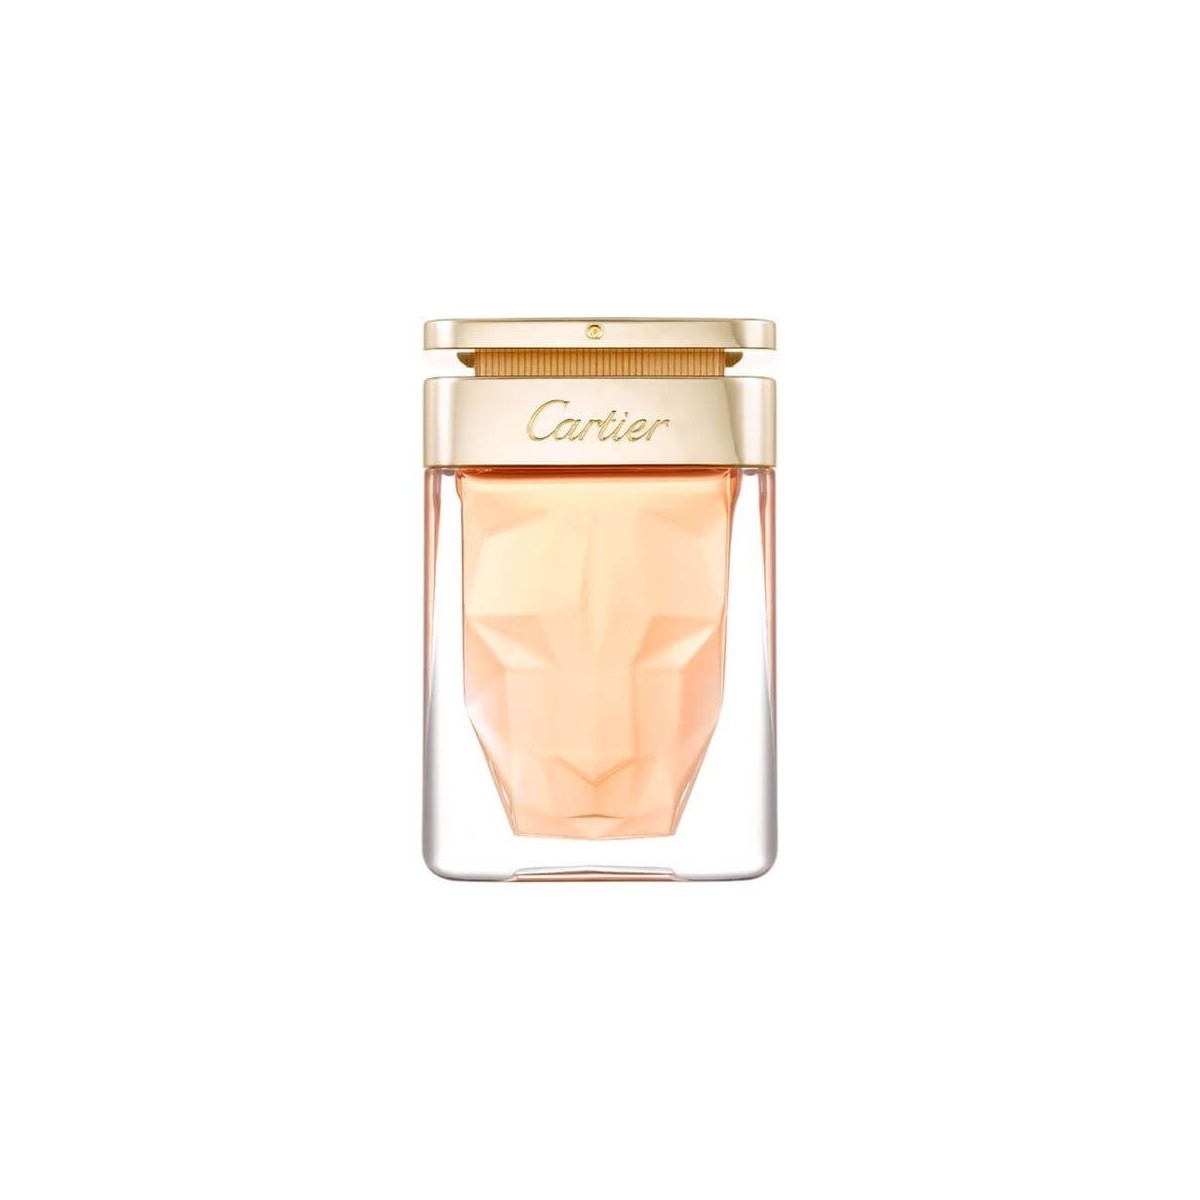 Cartier Le Panthere Eau de Parfum 50ml spray